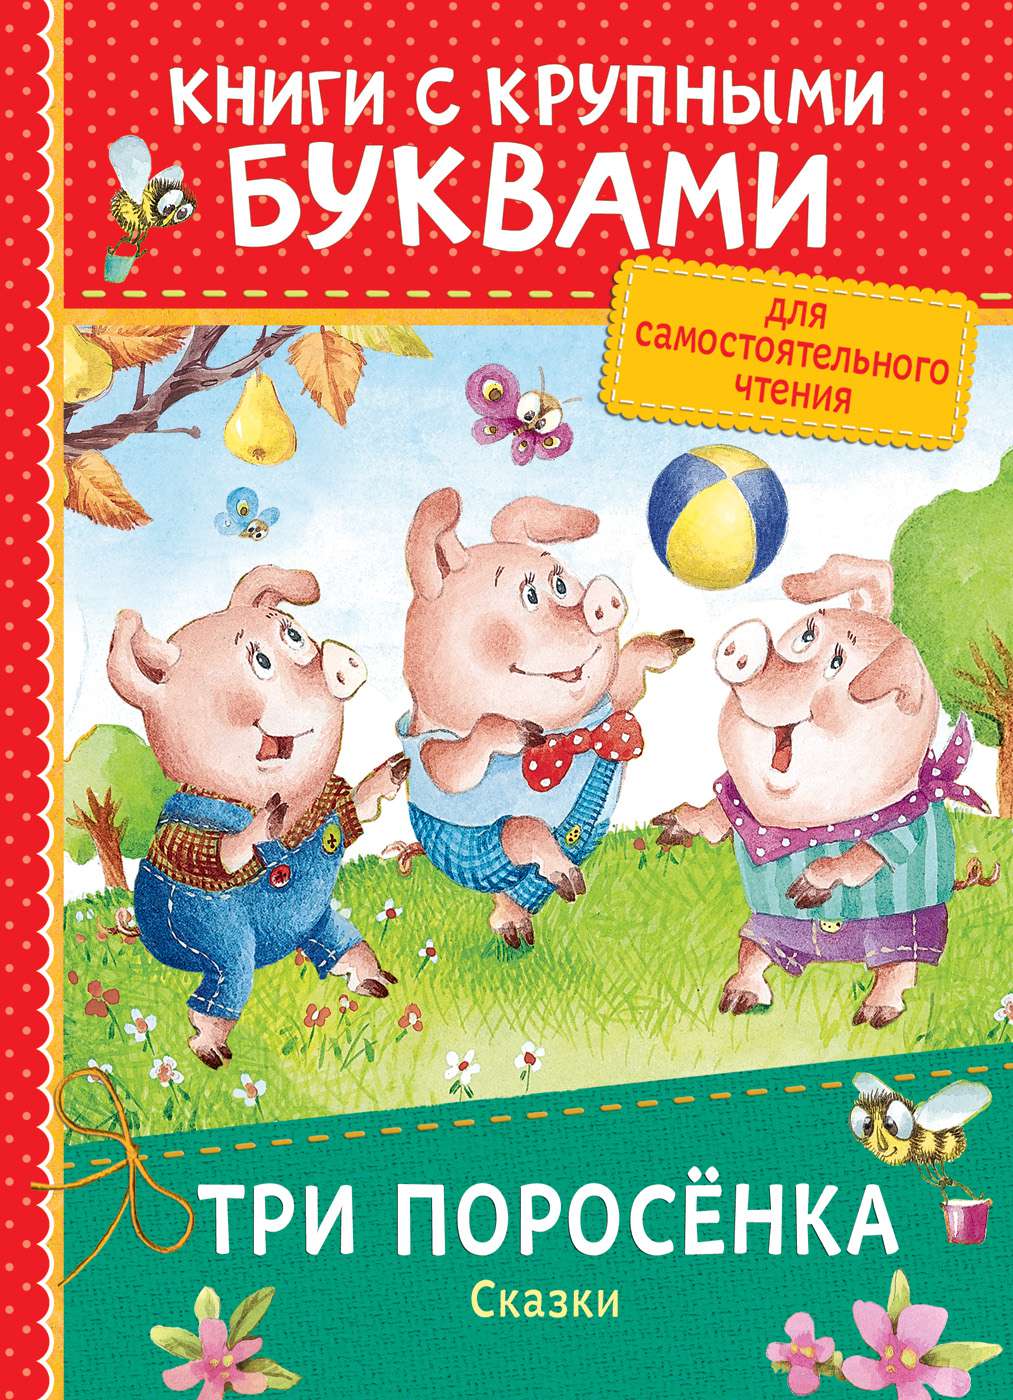 Книга 34262 Три поросенка.Сказки (Книги с крупными буквами) Росмэн - Пермь 